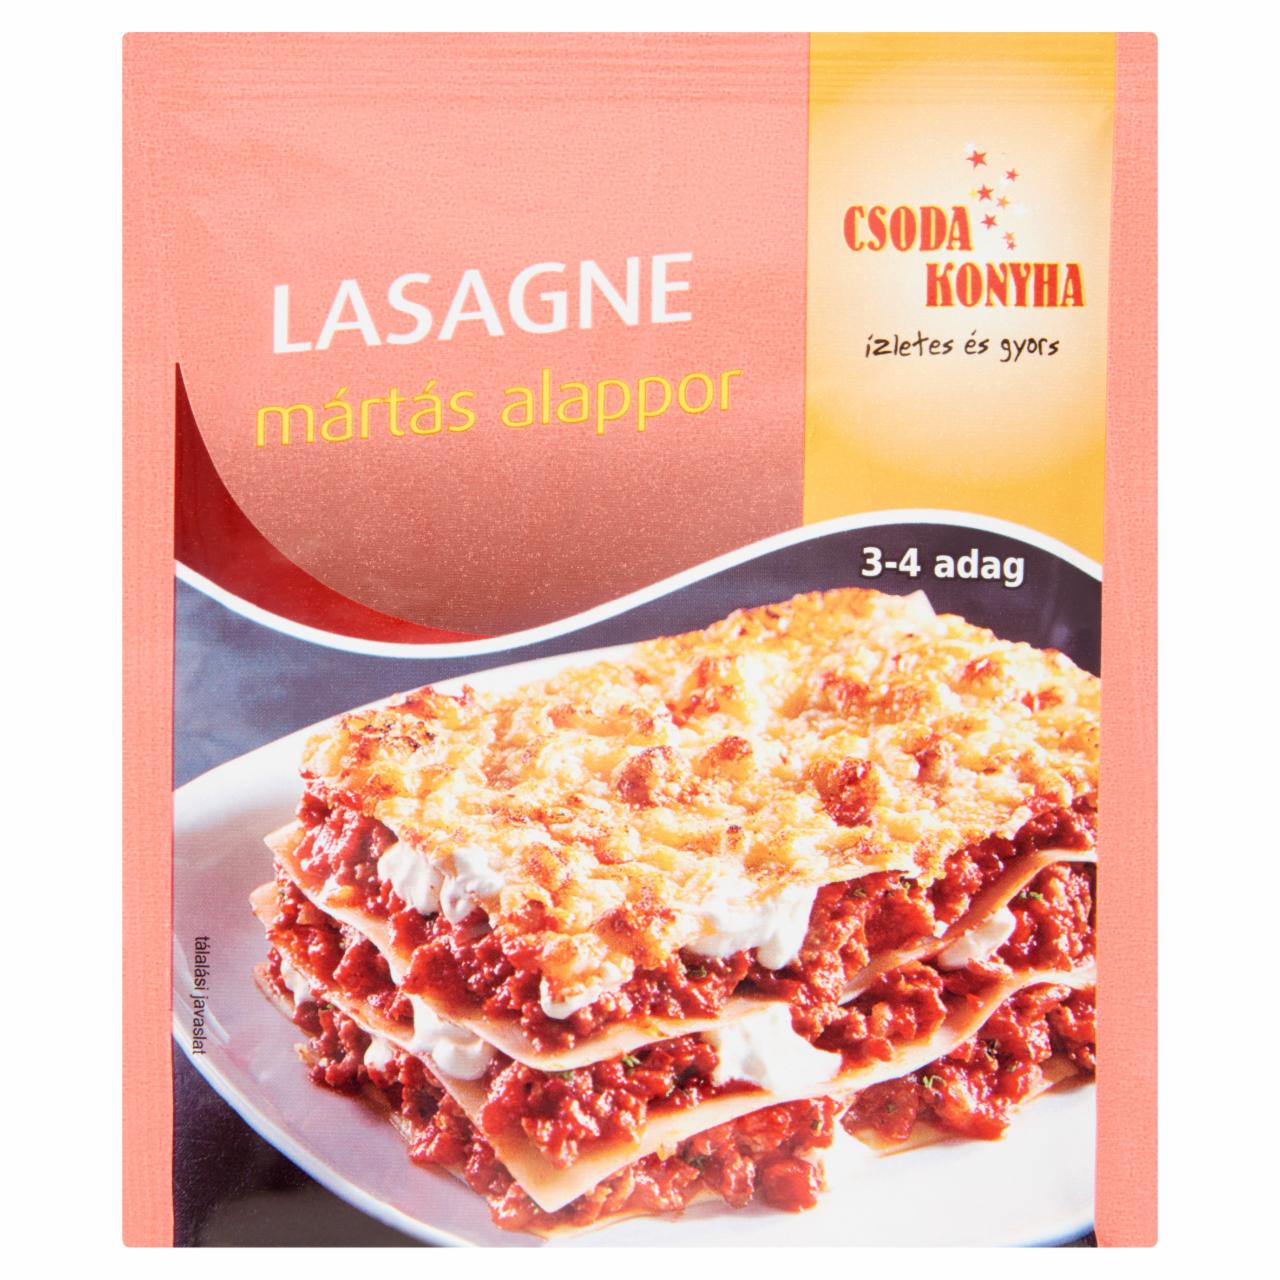 Képek - Csoda Konyha lasagne mártás alappor 48 g